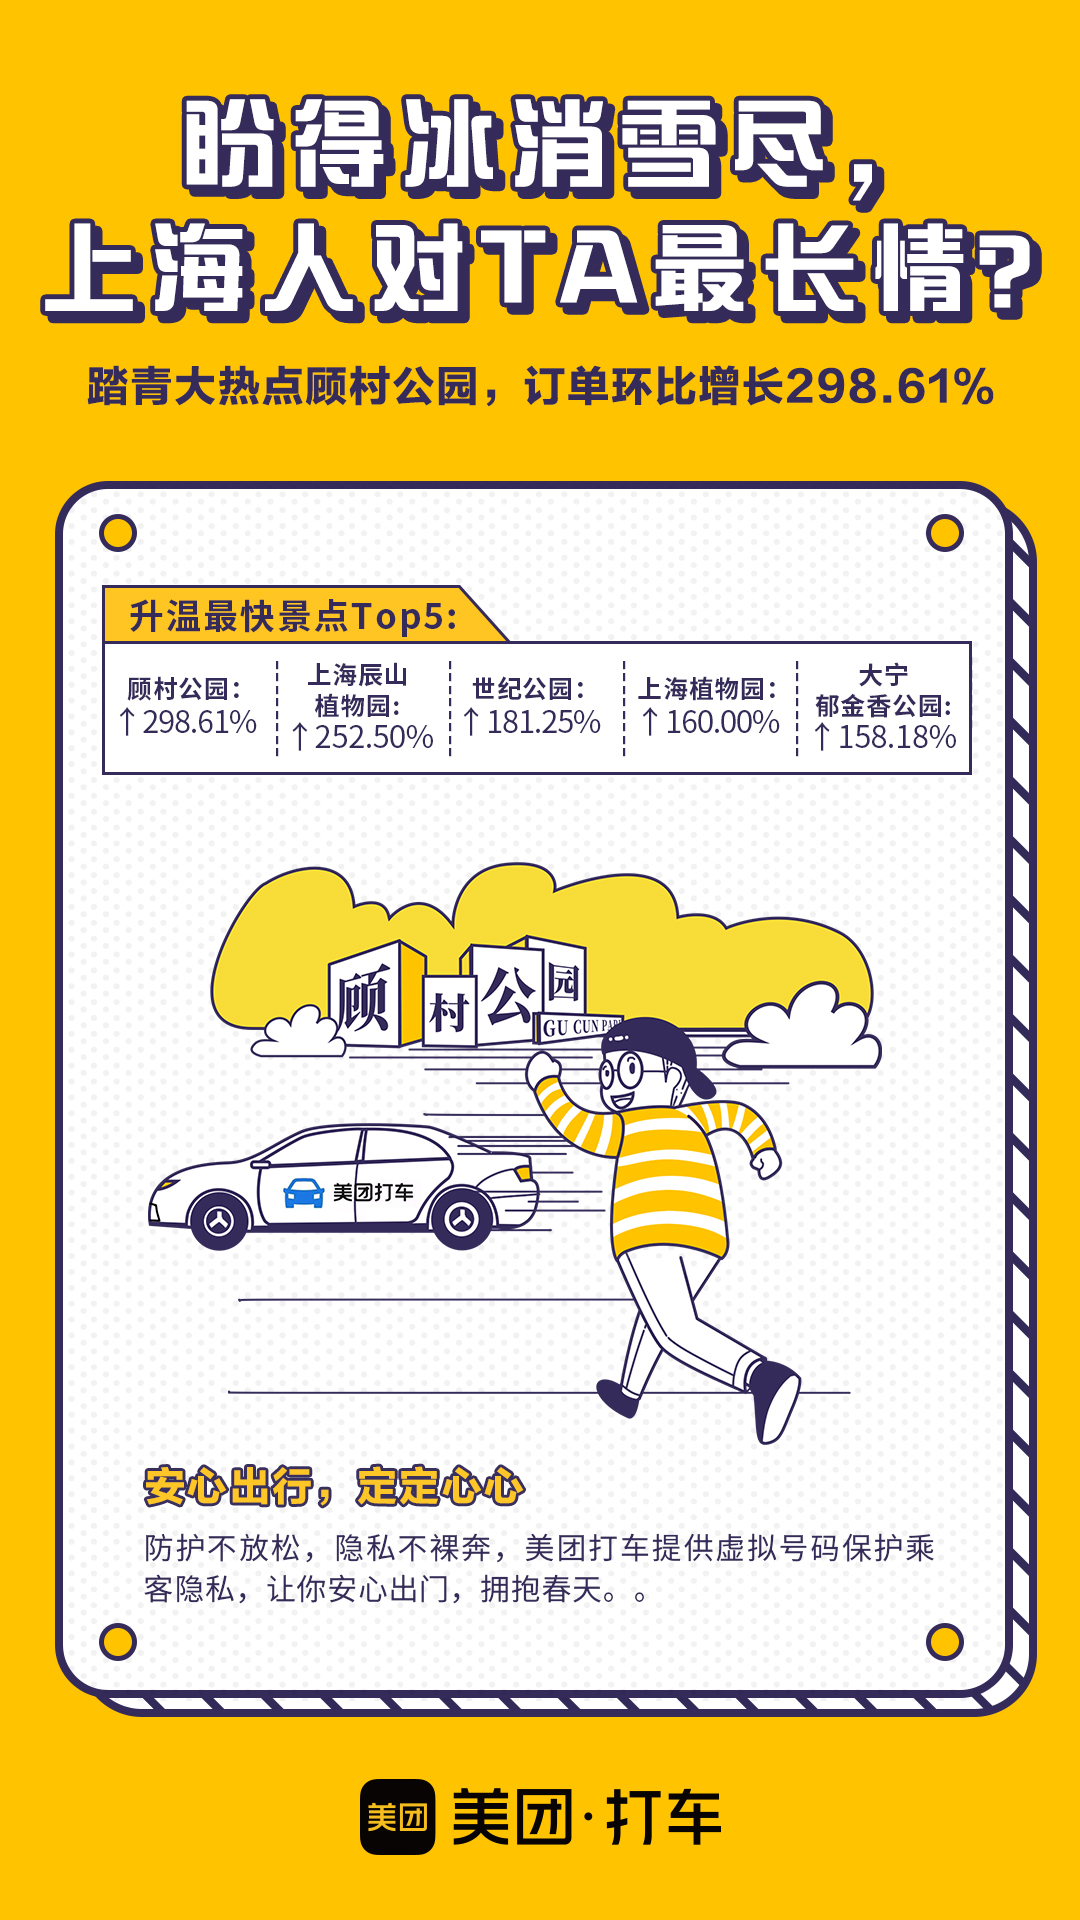 美团打车消费回暖报告：顾村公园订单激增3倍 成上海市民首选景点